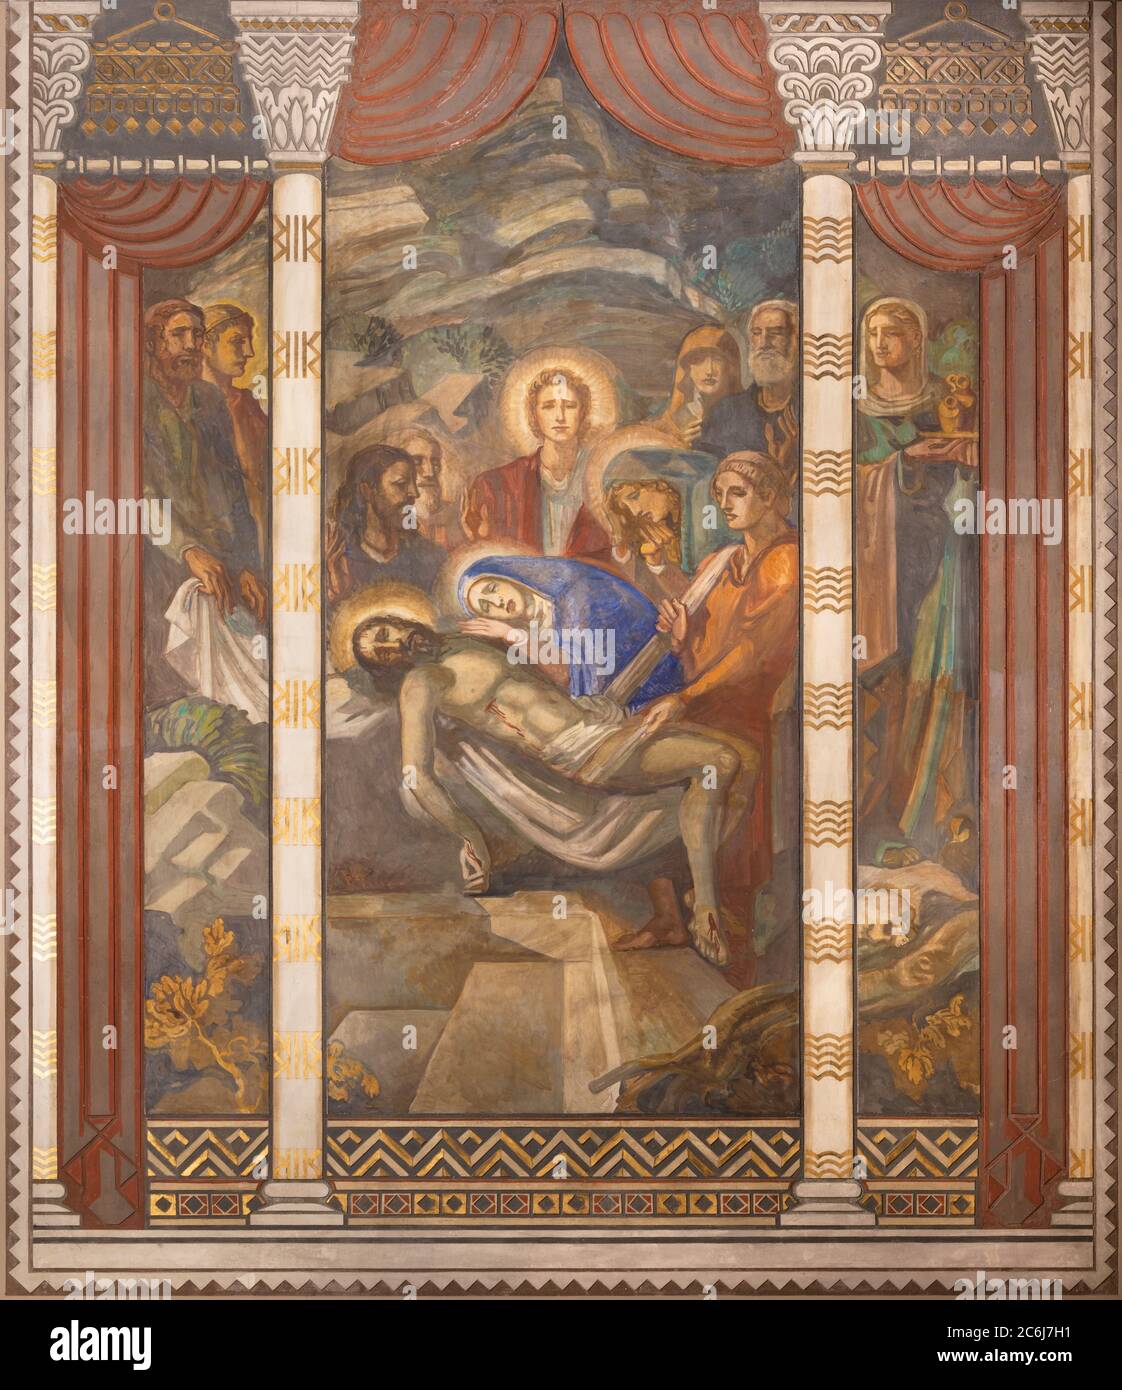 BARCELLONA, SPAGNA - 3 MARZO 2020: L'affresco di deposizione (Pietà) nella chiesa Parroquia Santa Teresa de l'Infant Gesù di Francisco Labarta. Foto Stock